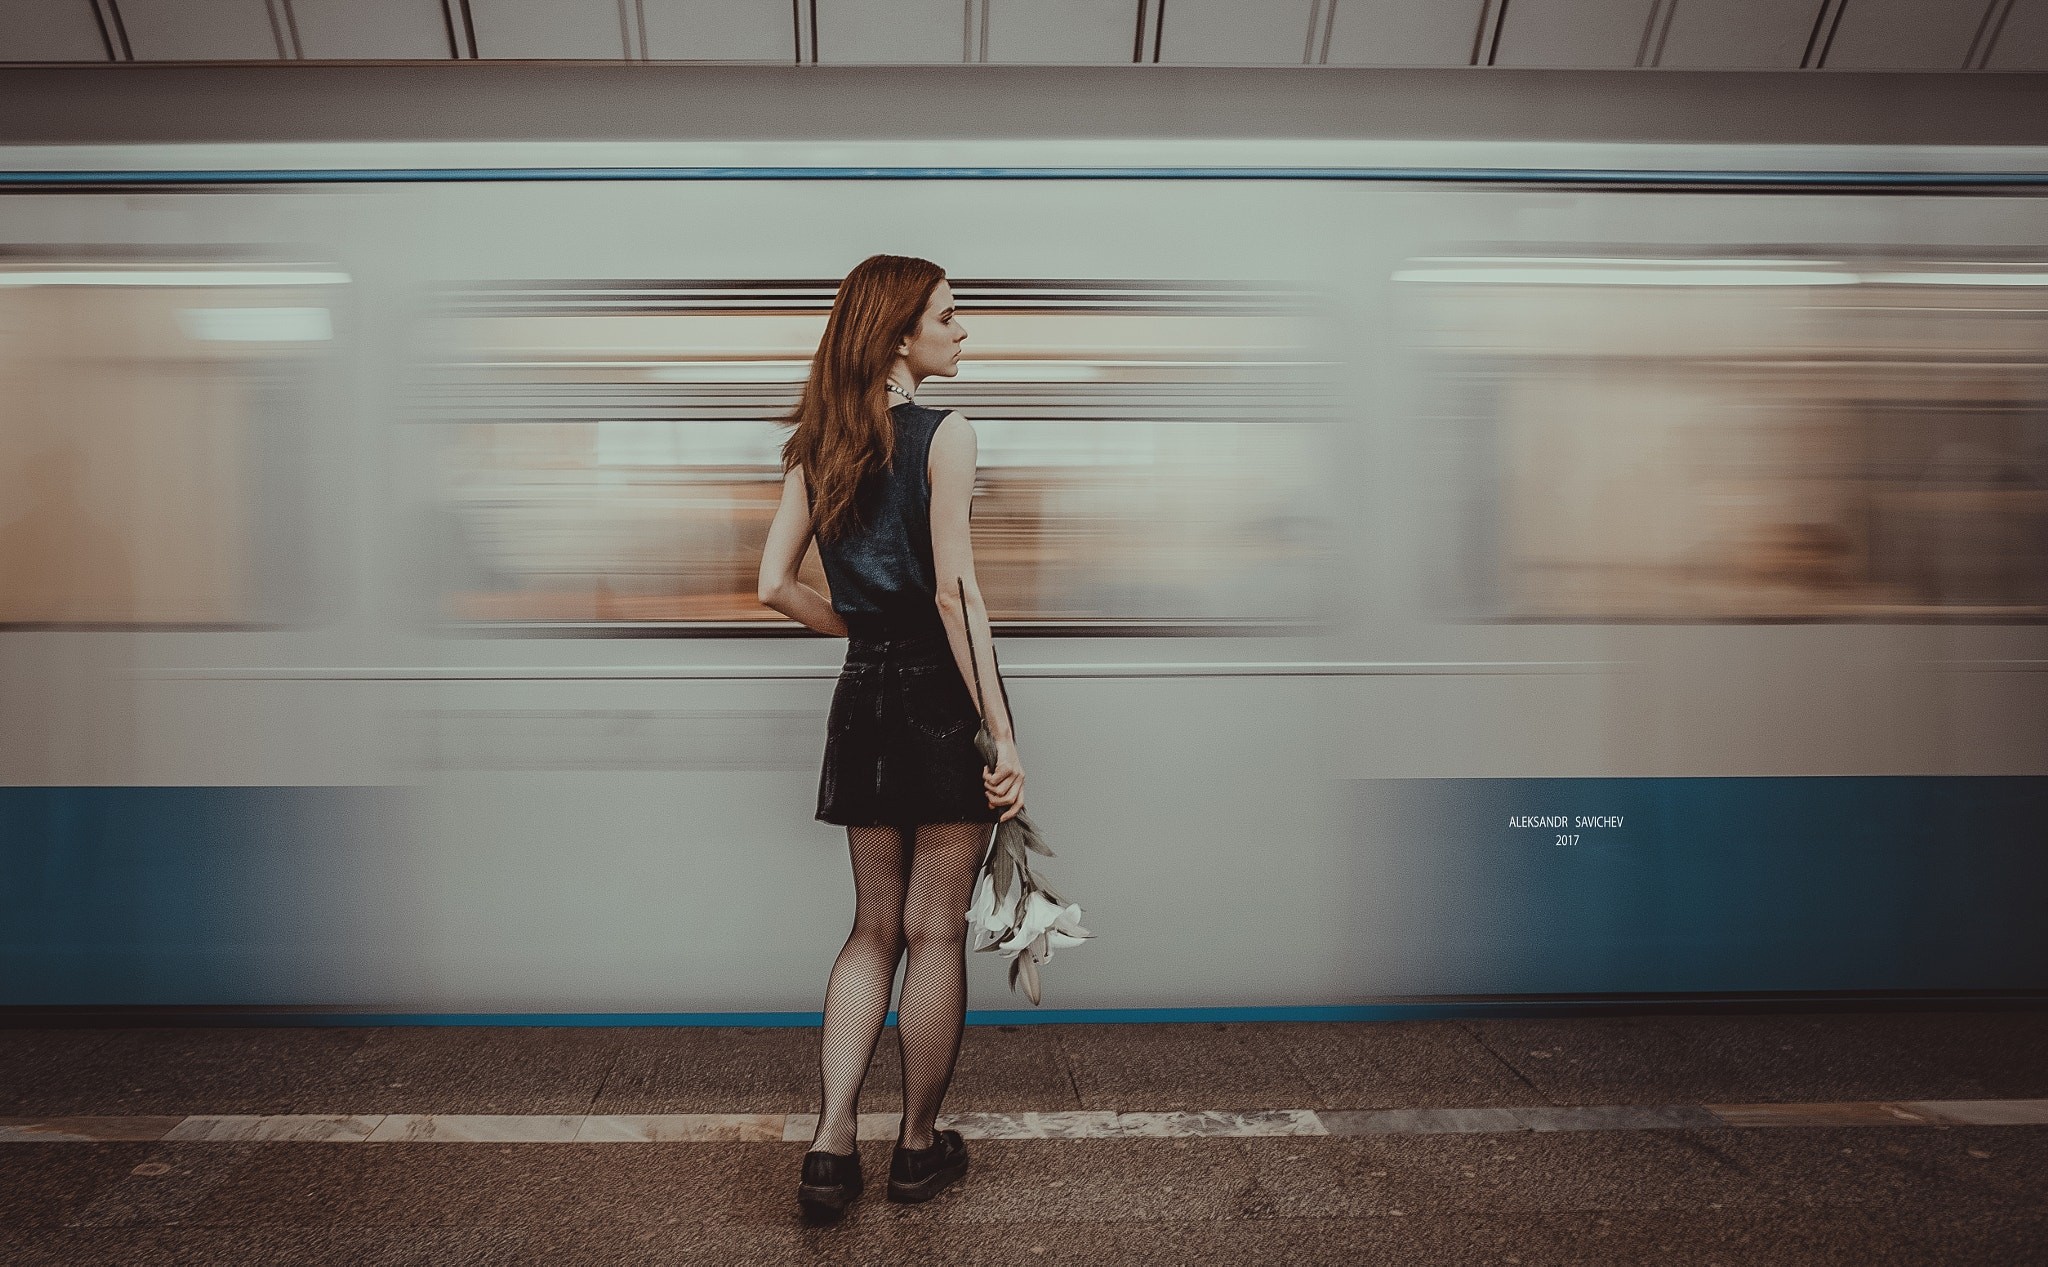 People 2048x1267 Aleksandr Savichev subway women model train 500px fishnet pantyhose